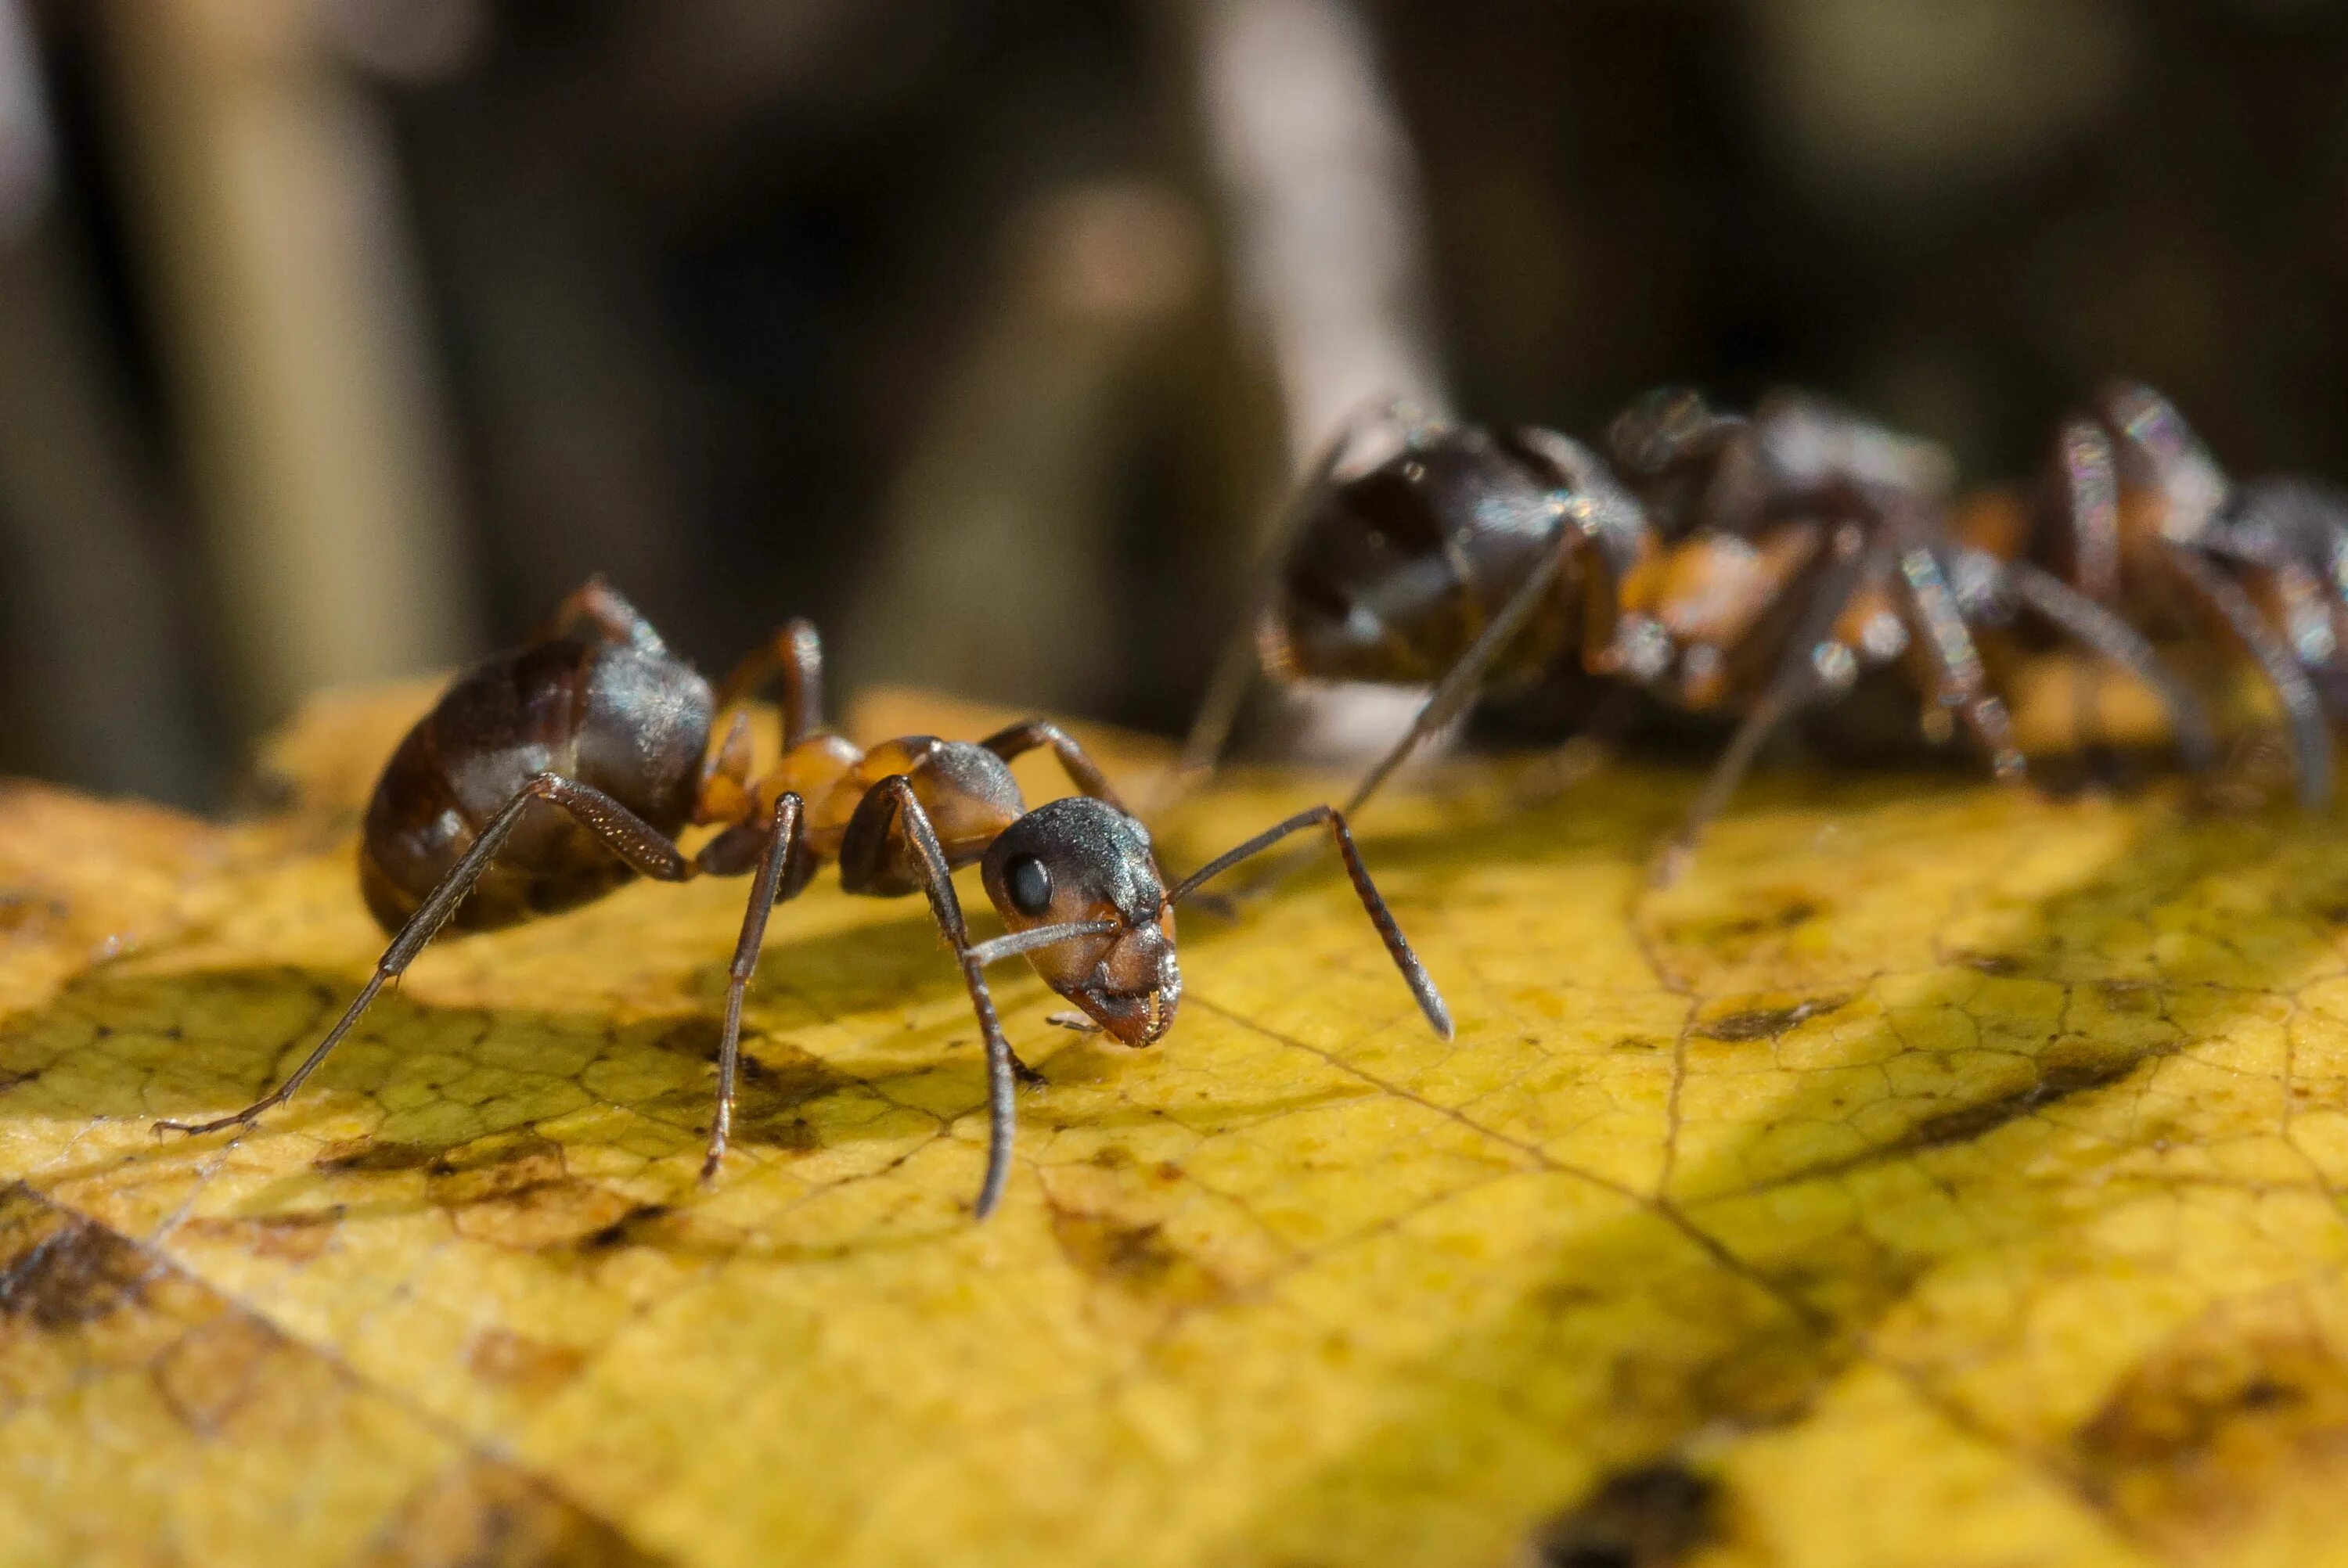 Лесной муравей тип развития. Муравьи Формика Руфа. Формика Руфа Муравейник. Рыжий Лесной муравей (Formica Rufa). Европейский муравей Лесной малый Formica Rufa.